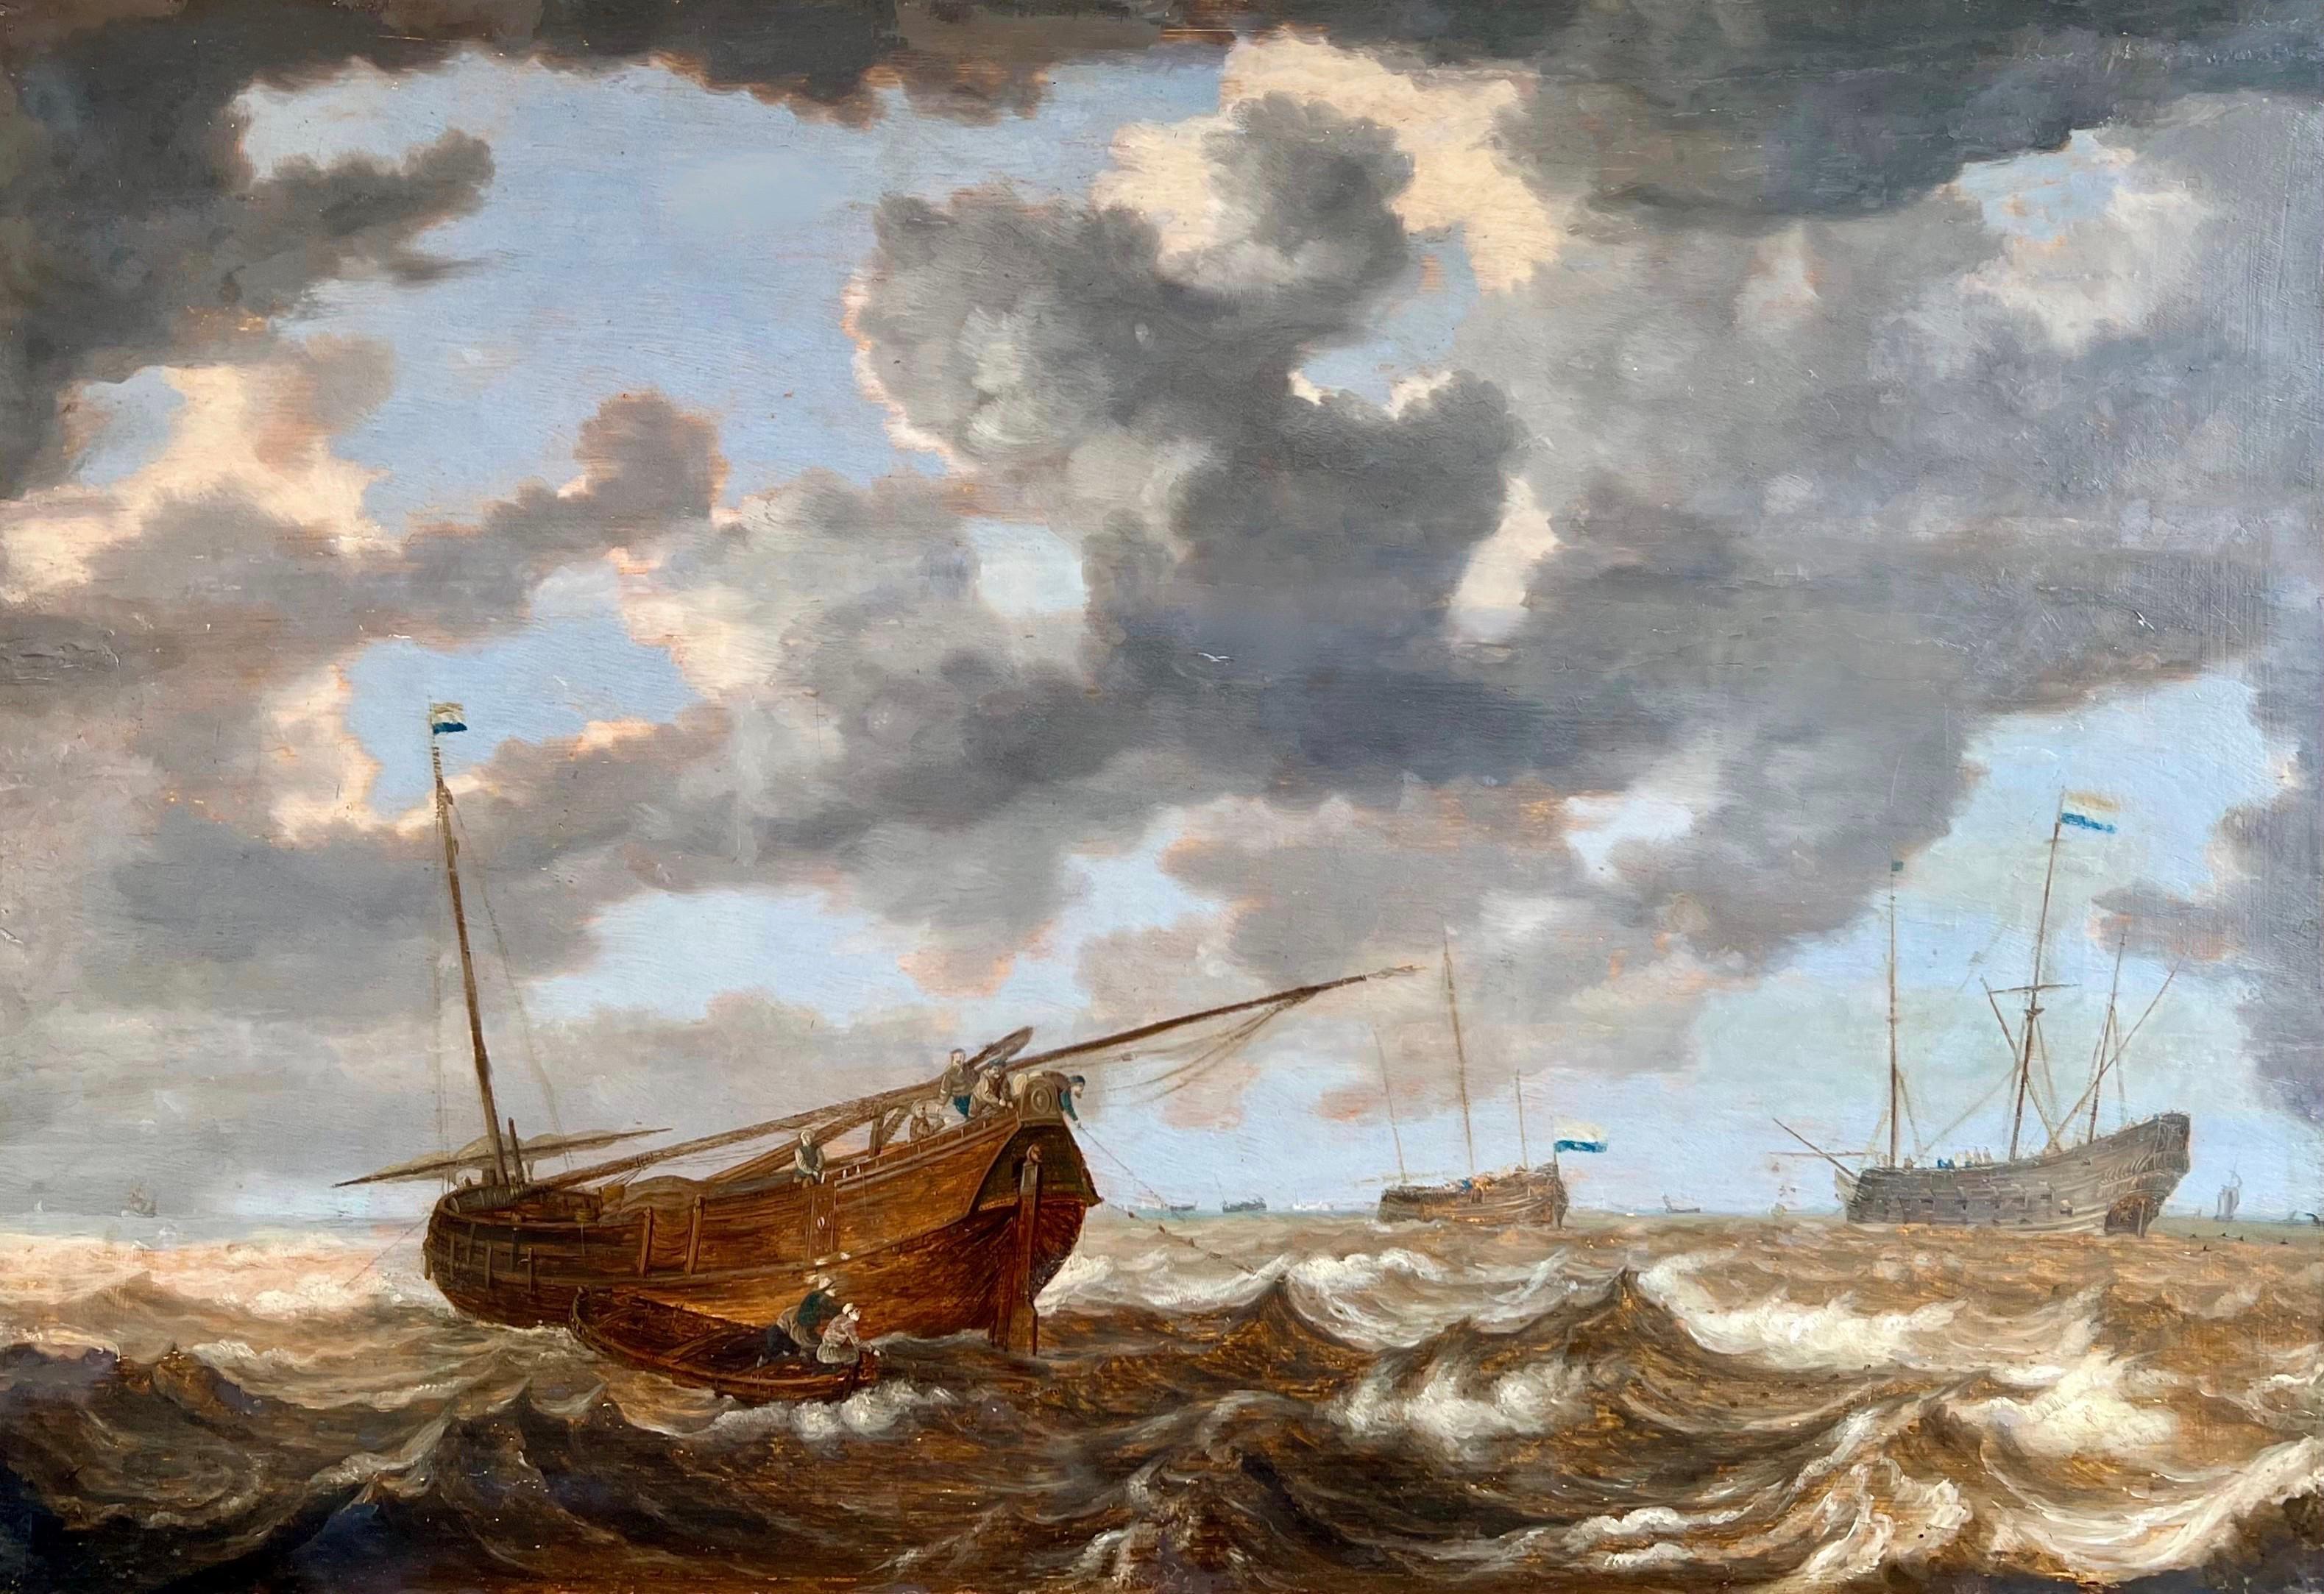 Landscape Painting Julius Porcellis - Marine hollandaise du 17e siècle - Mer agitée avec une goélette hollandaise - Bateaux de mer